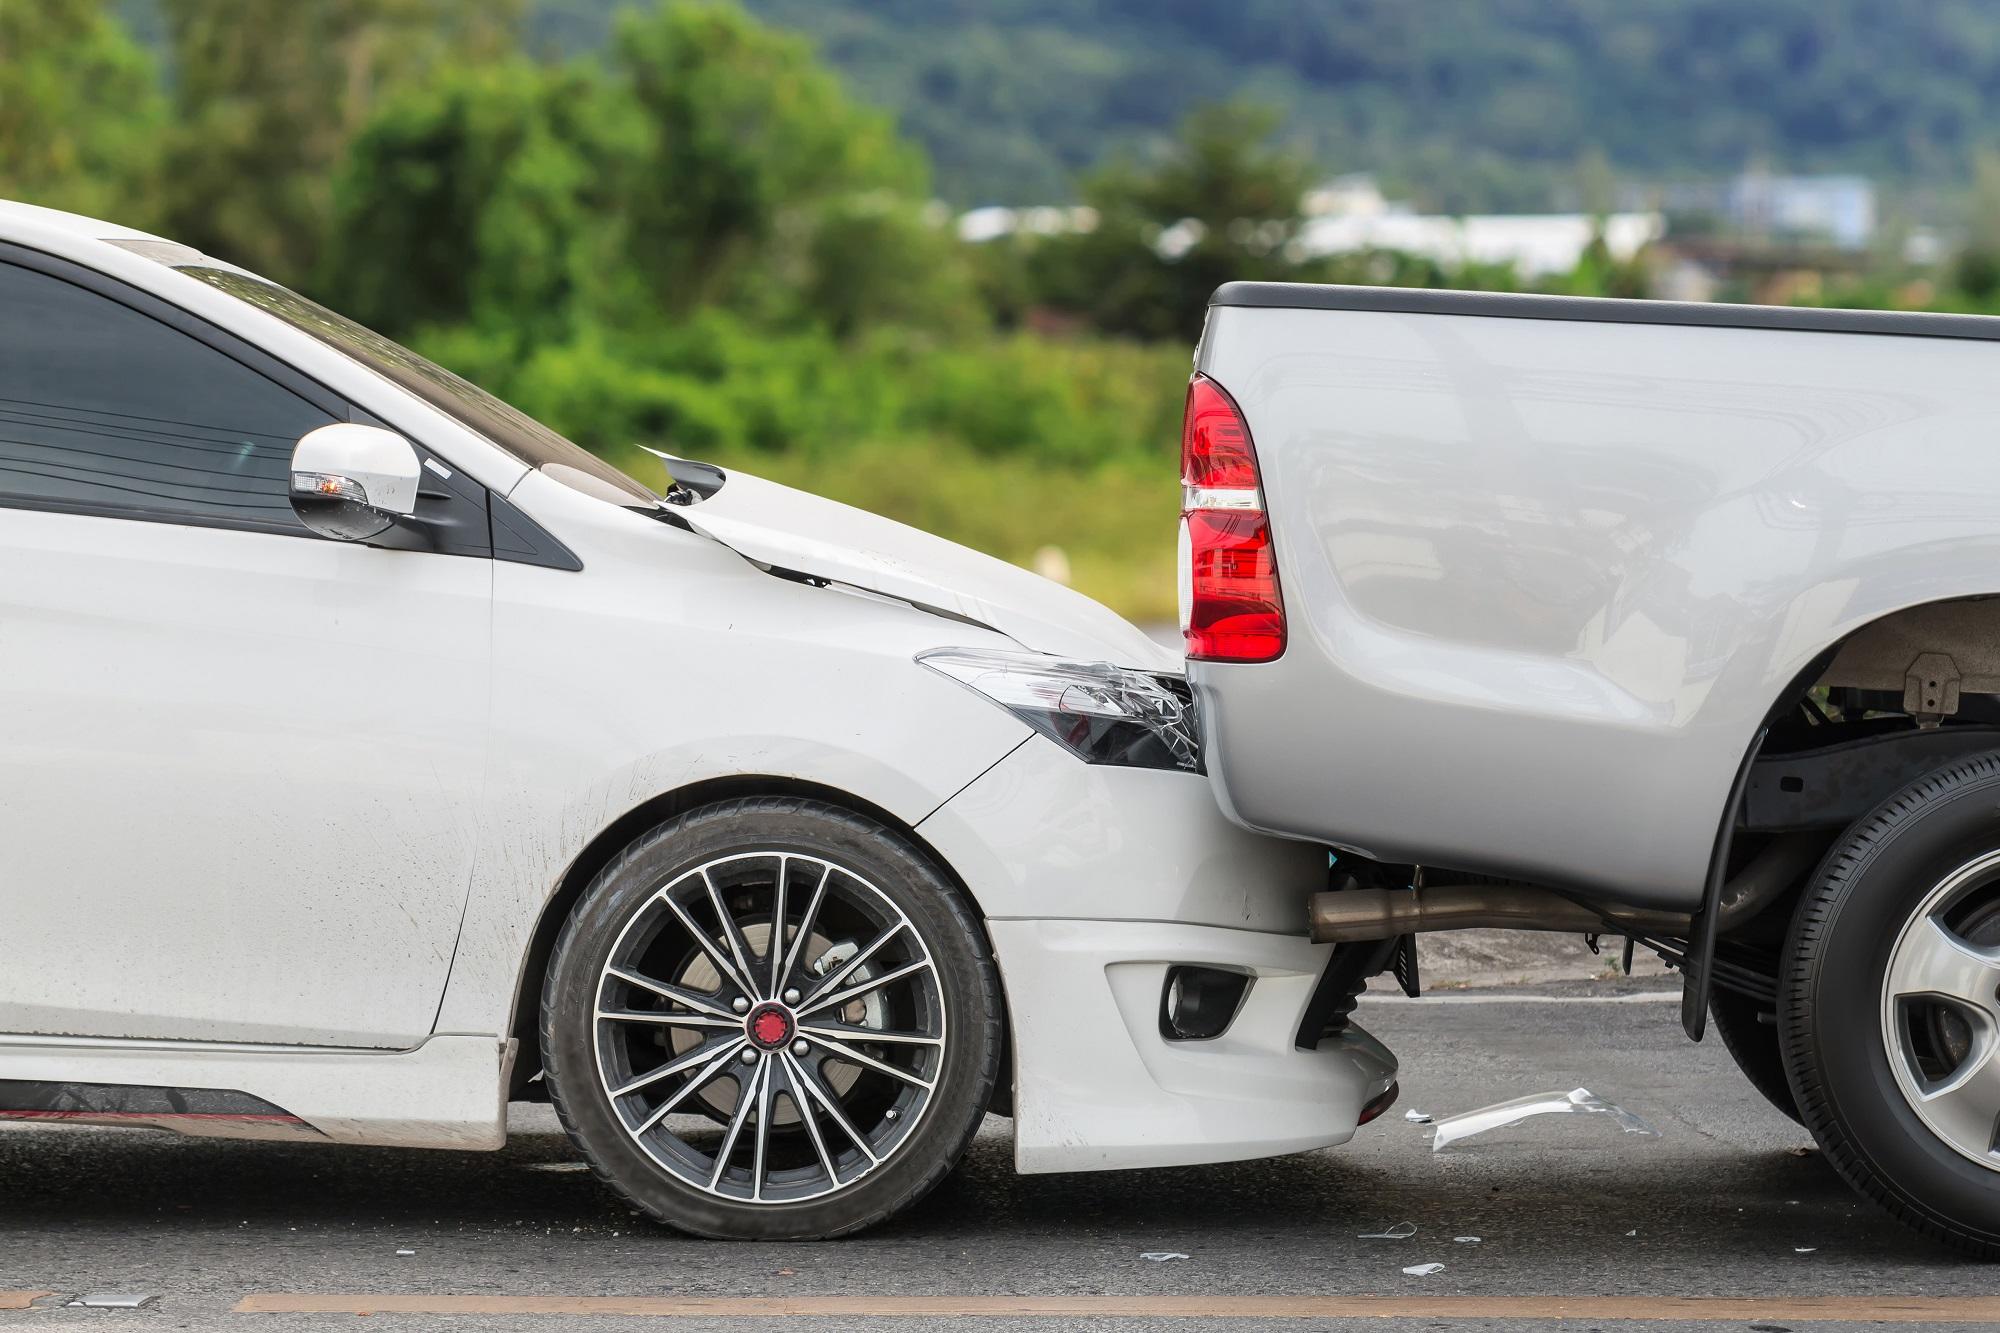 حادث التصادم وقع بين 6 مركبات في منطقة الياسمين. (Shutterstock)